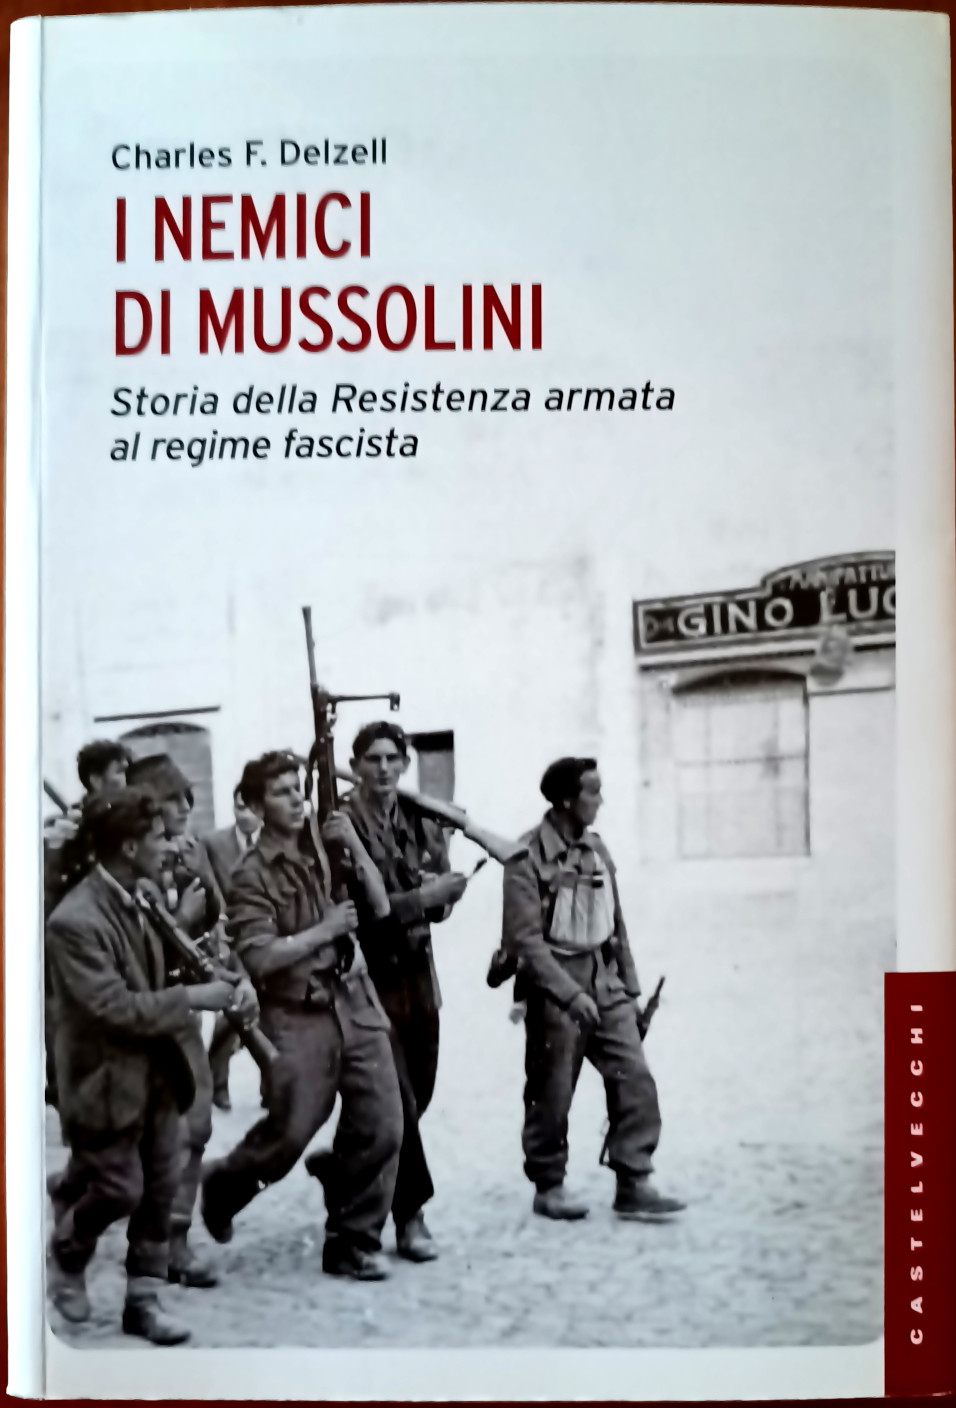 Charles F. Delzell, I nemici di Mussolini. Storia della Resistenza armata al regime fascista, Ed. Castelvecchi, 2013